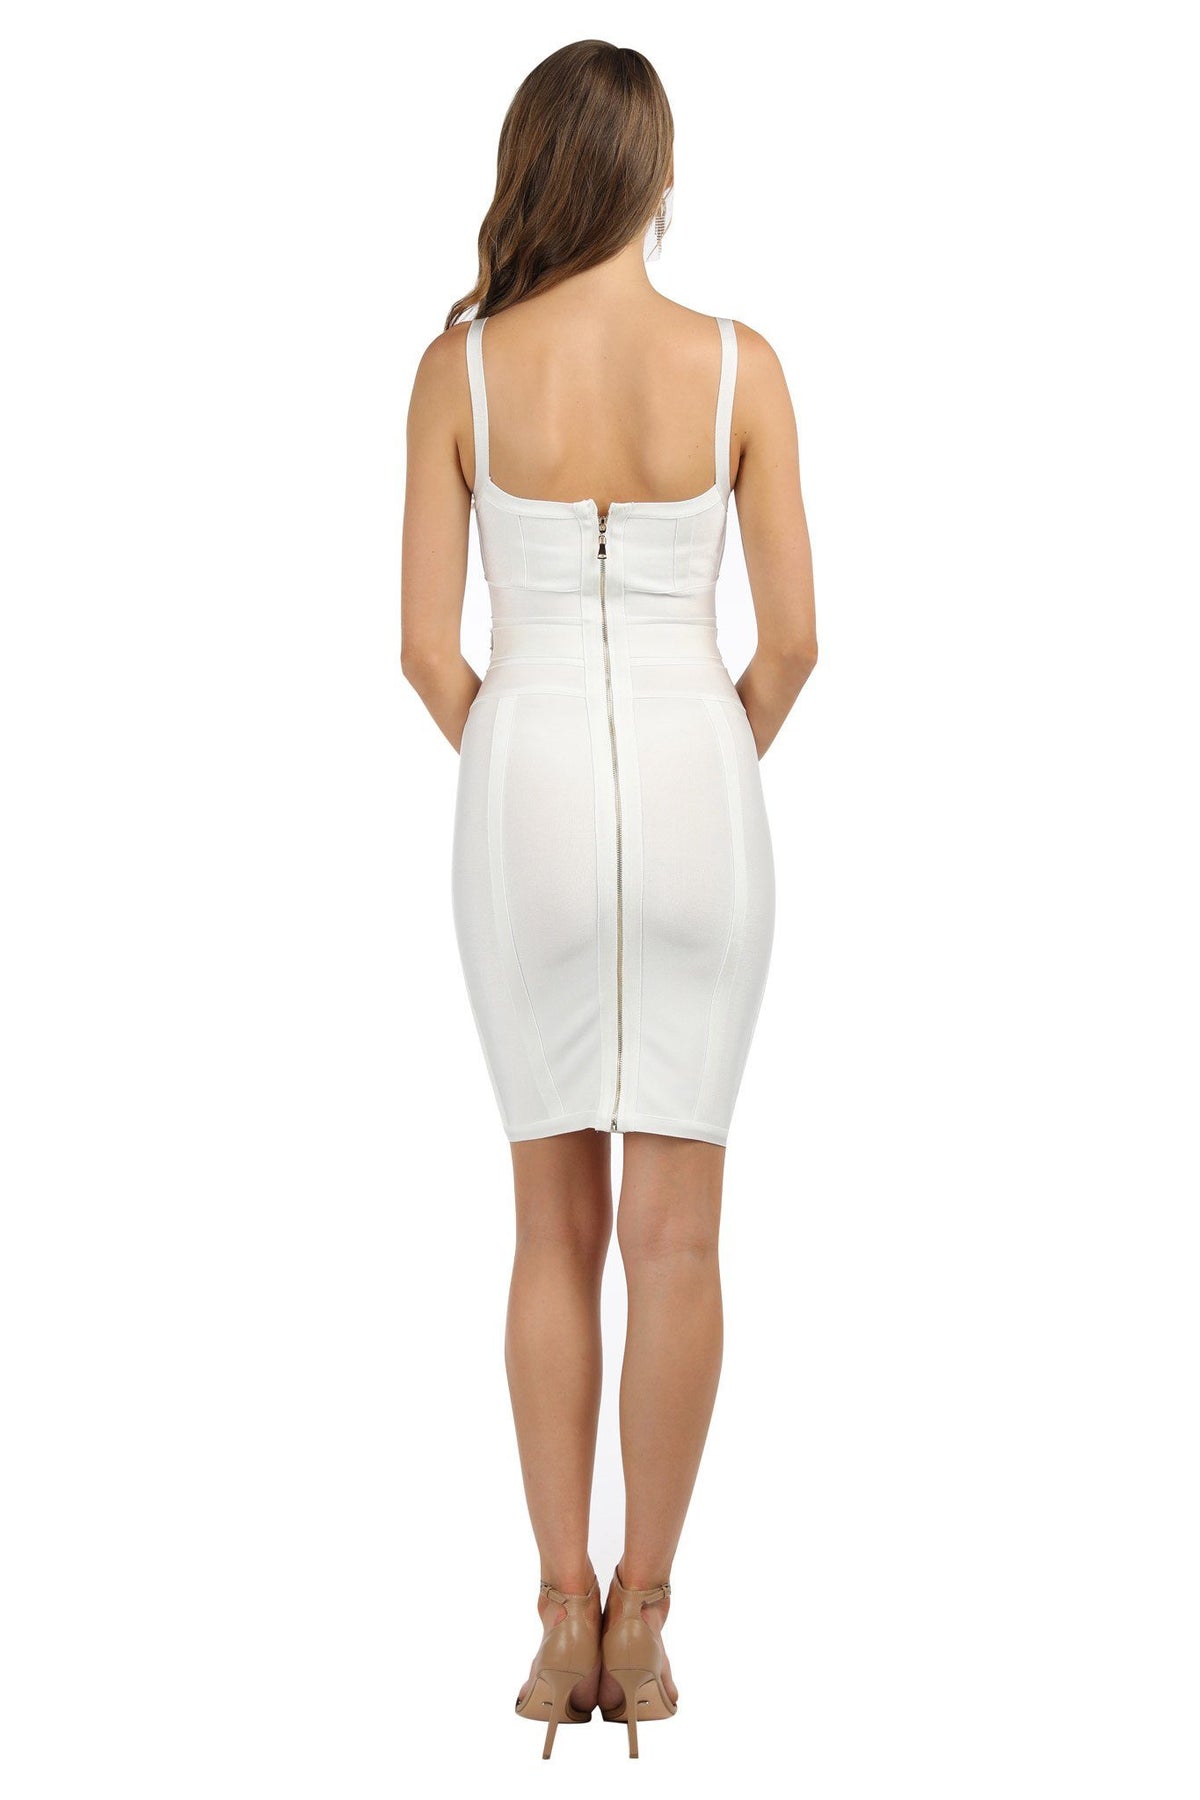 Luna Dress - White (L - Clearance Sale)